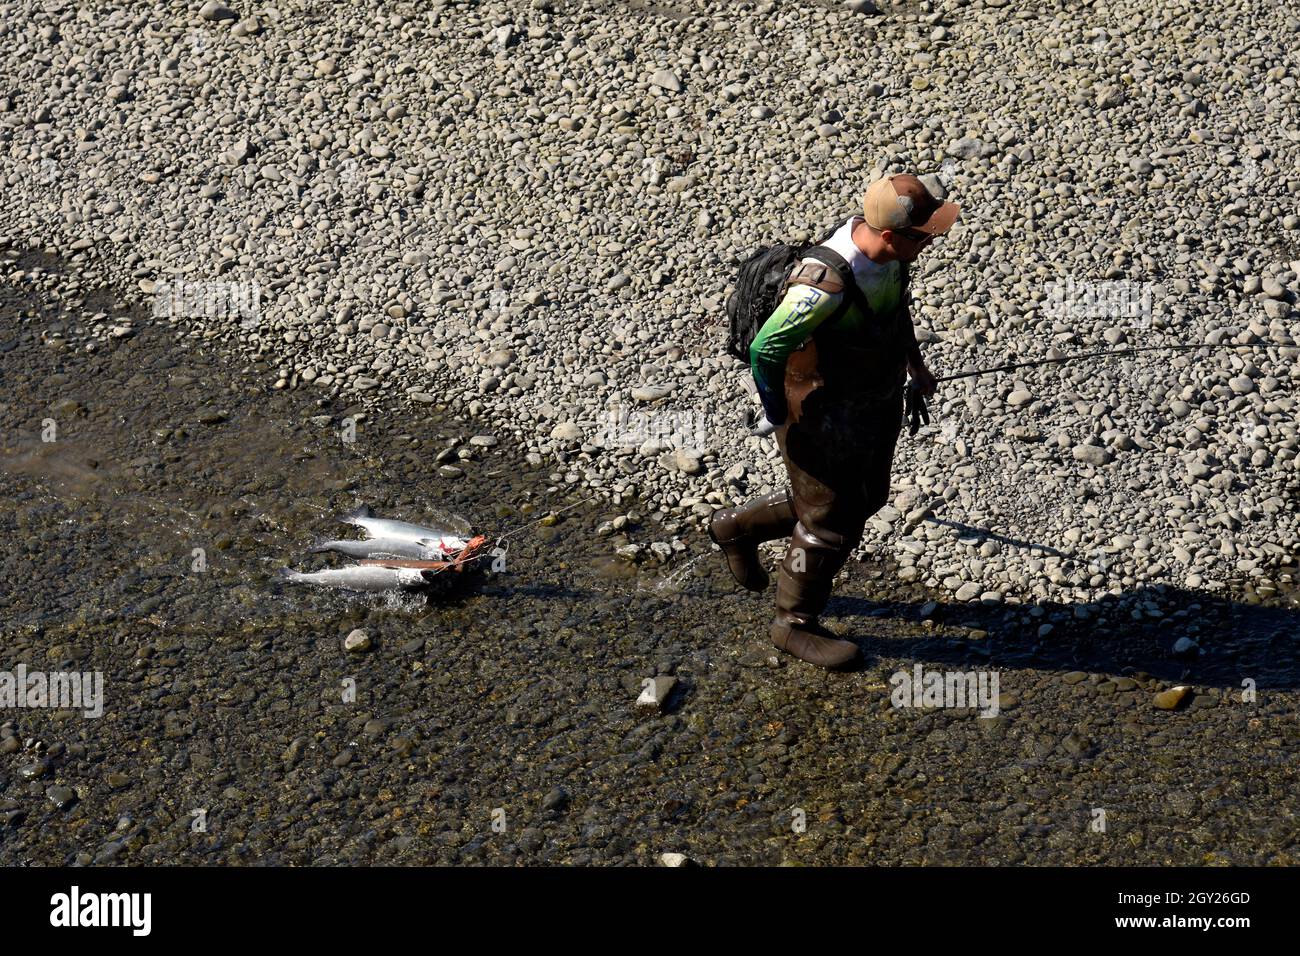 Un pêcheur récréatif tire du saumon, Ship Creek, Anchorage, Alaska, États-Unis Banque D'Images